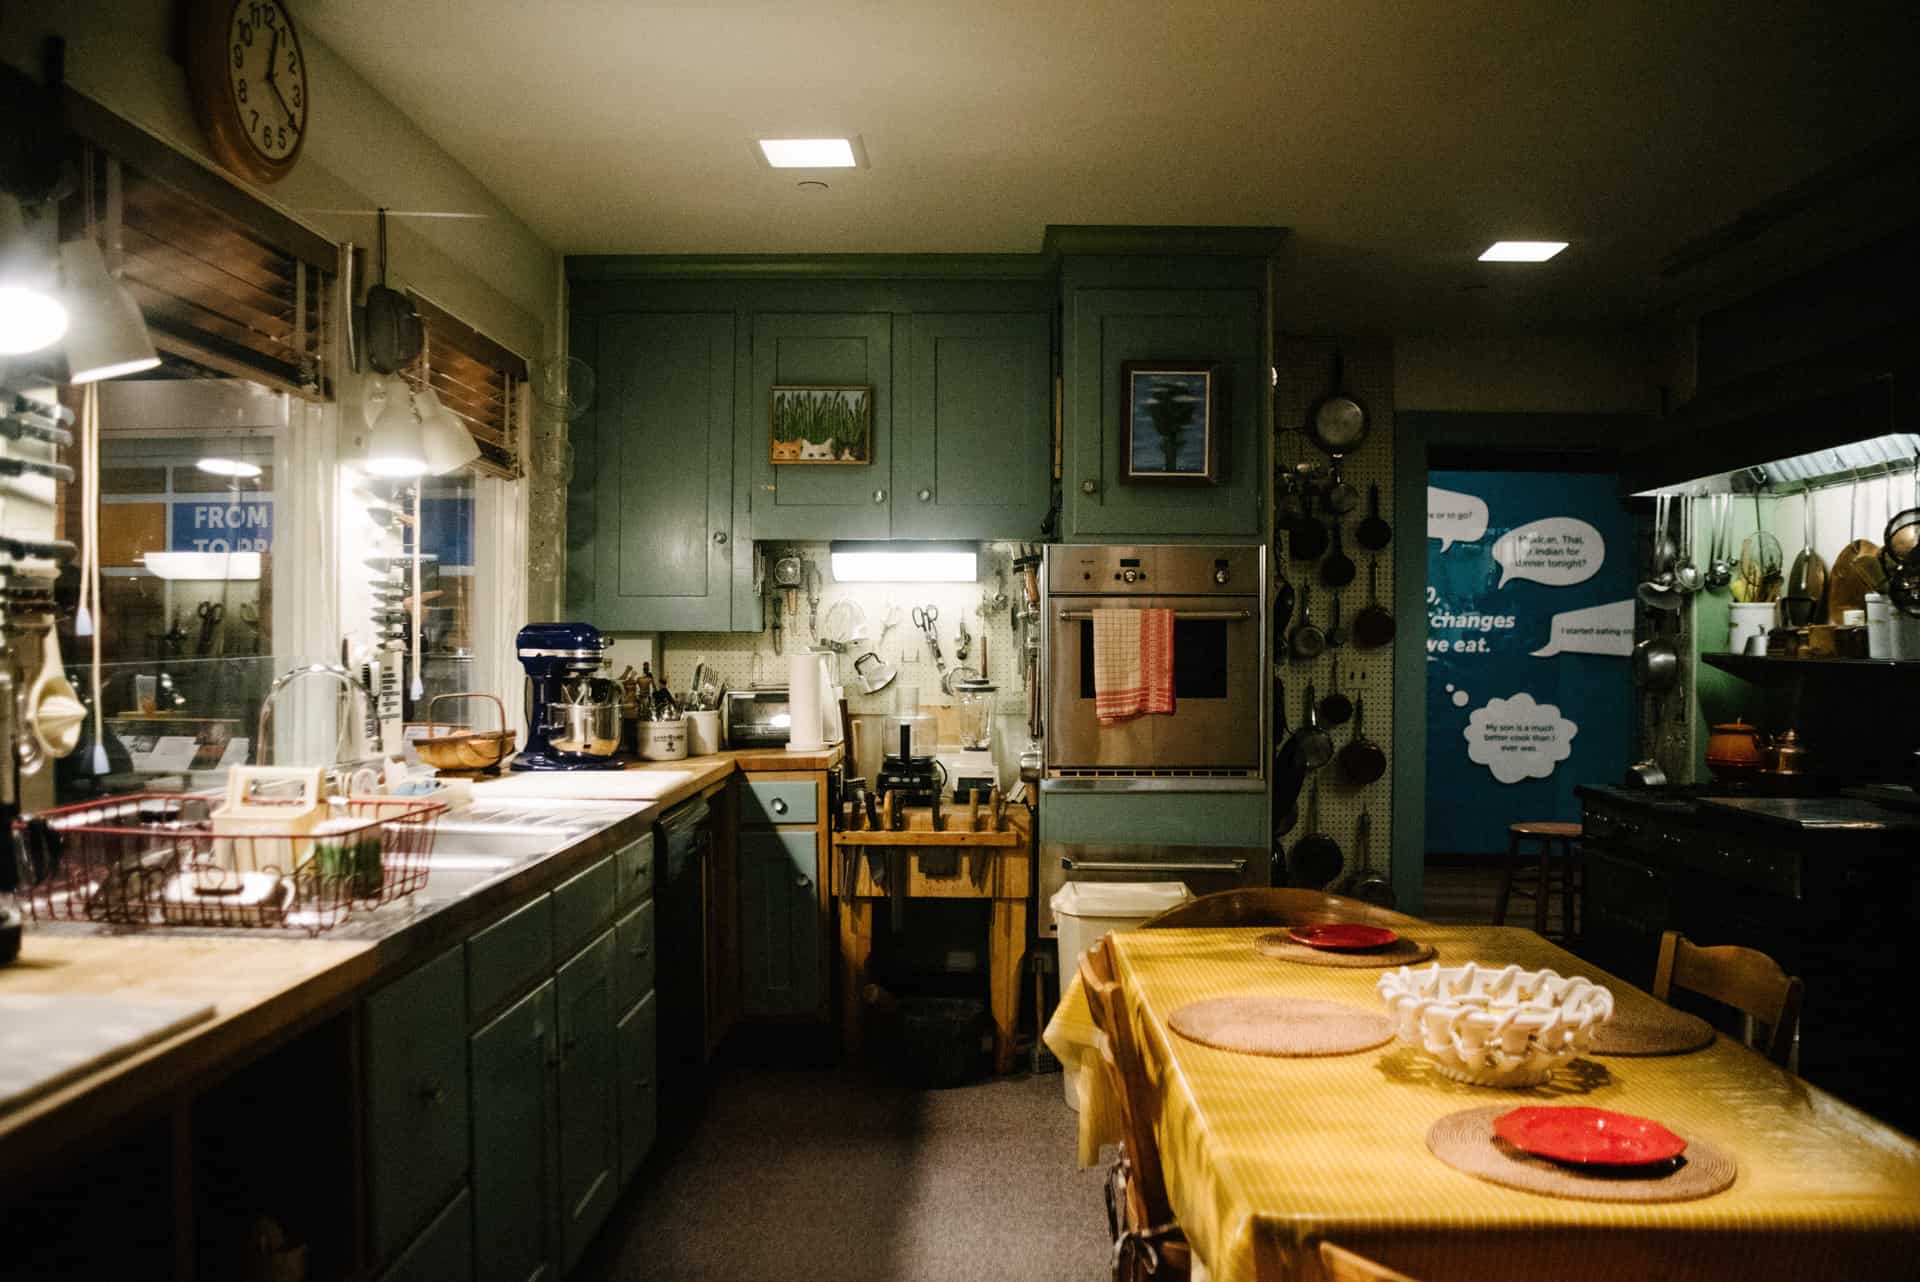 Julia Child kitchen